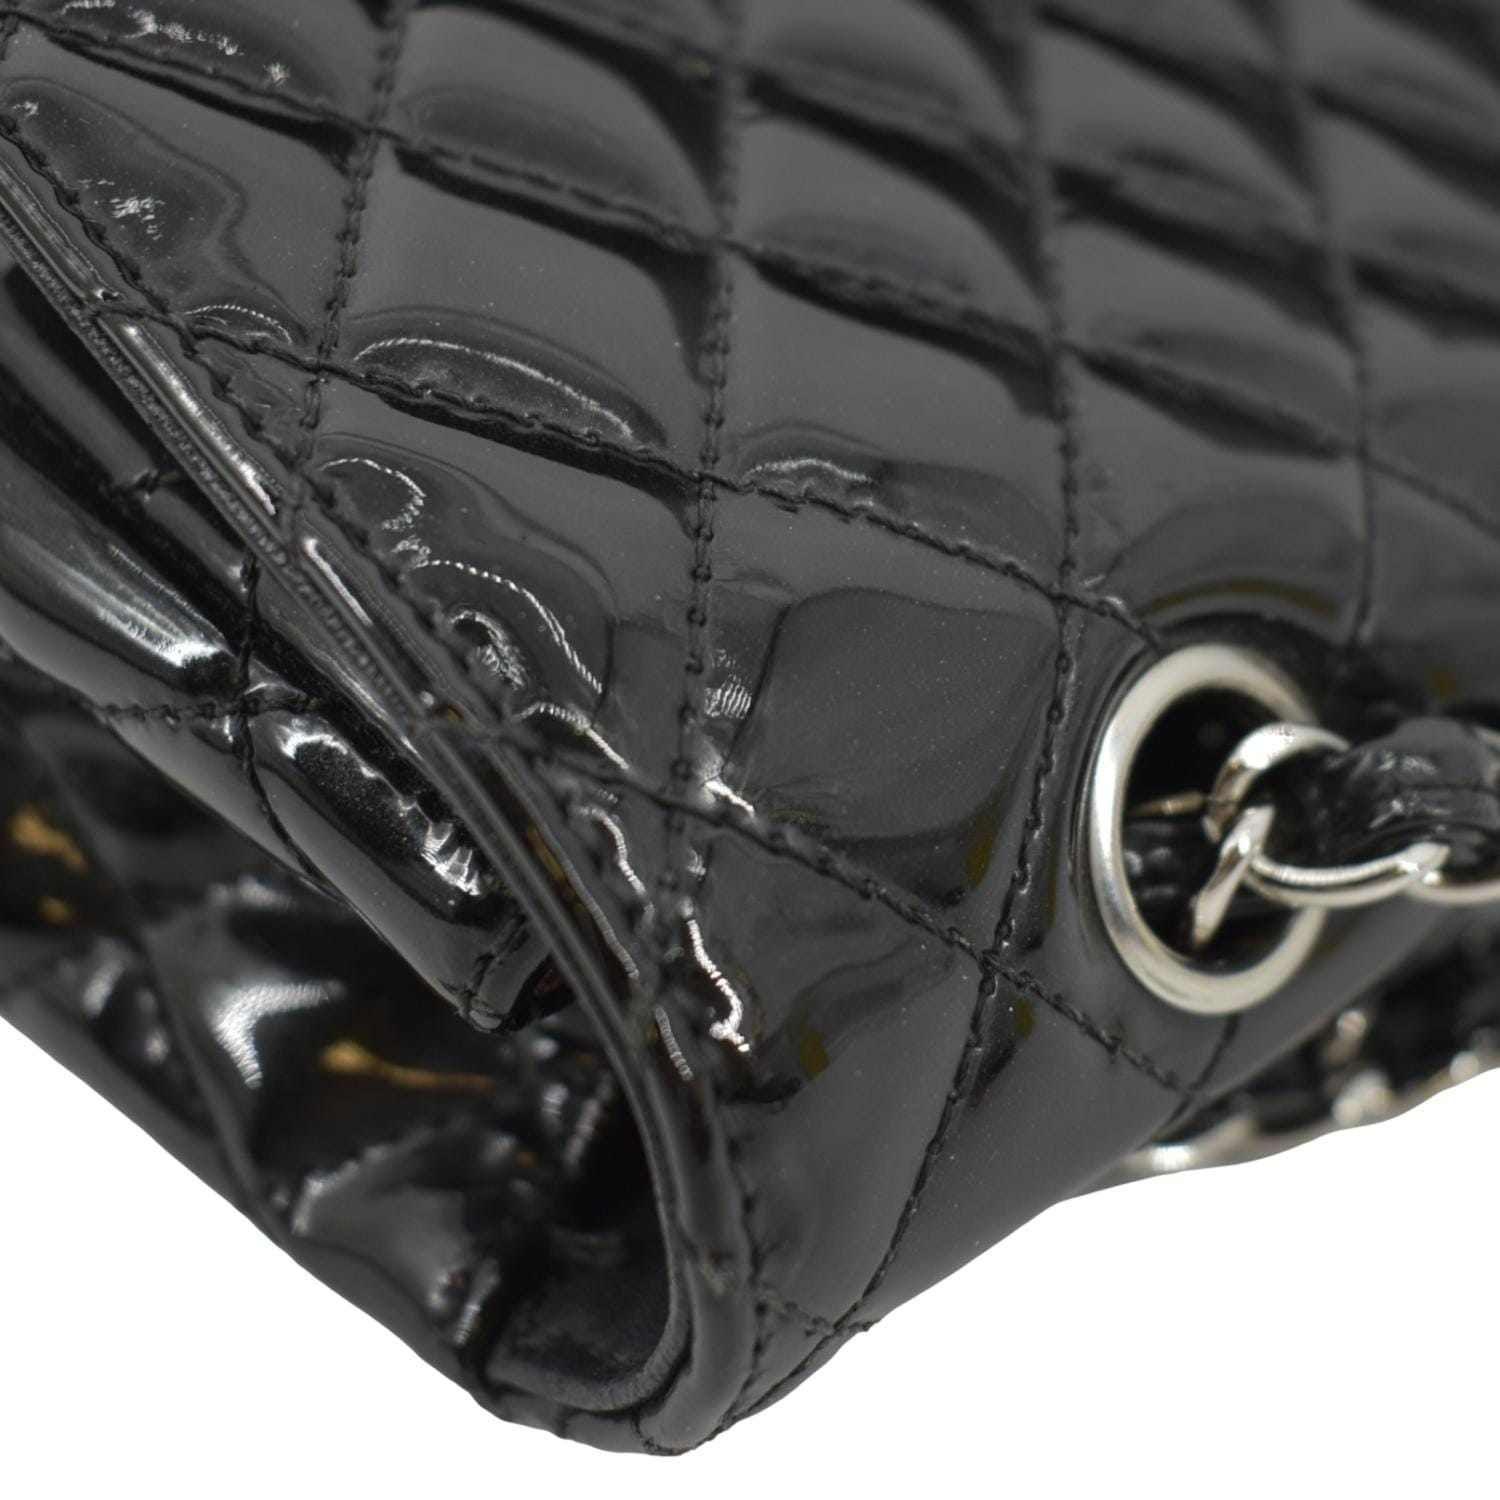 CHANEL Secret Label Flap Patent Leather Shoulder Bag Black